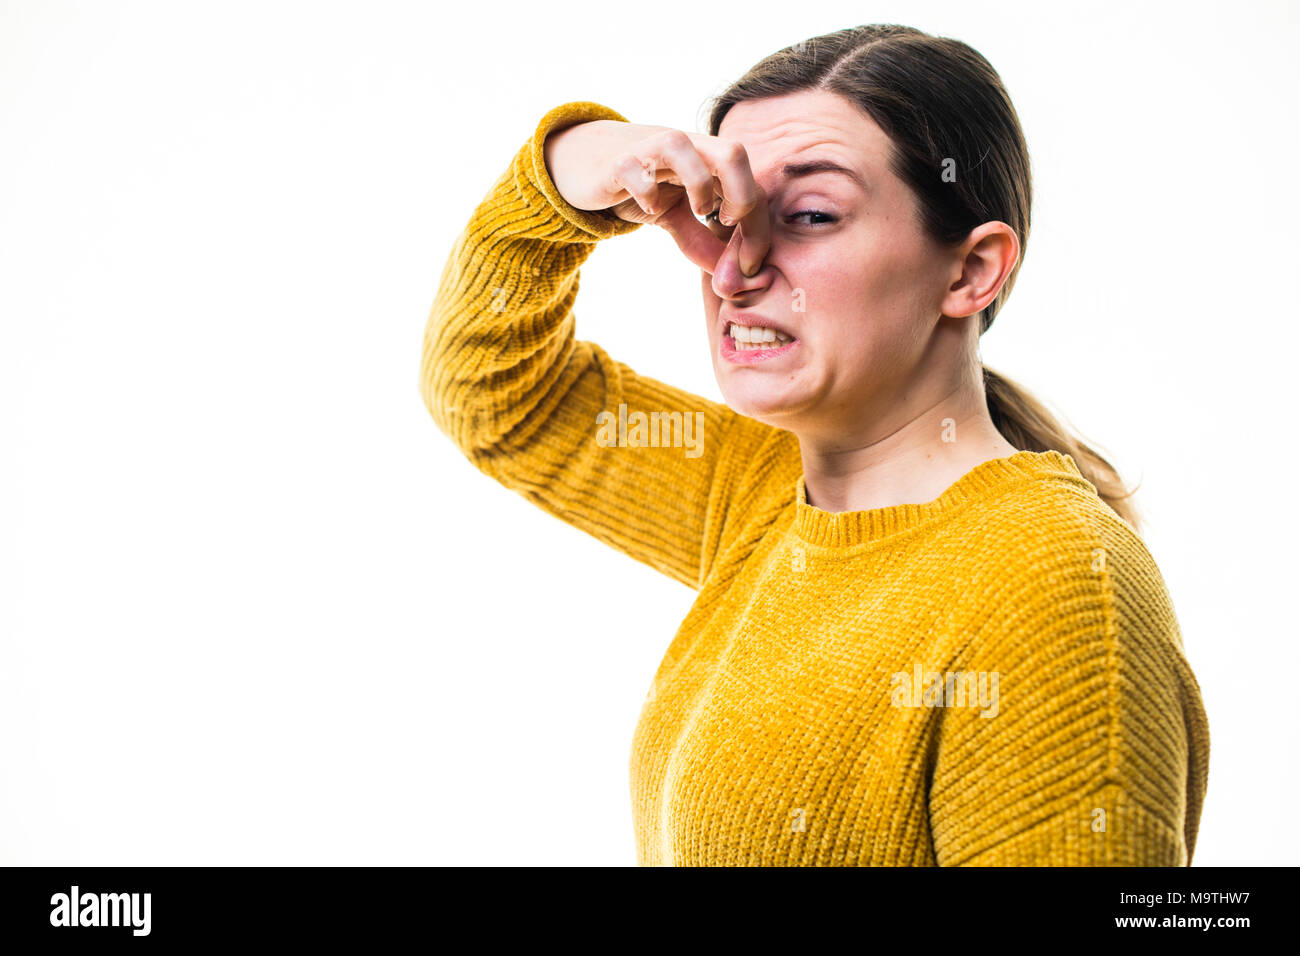 Une jeune femme de race blanche fille portant un chandail de cavalier jaune, de pincement ou de tenir son nez pour bloquer un stinky malodorantes terrible, de l'environnement nuisibles , debout sur un fond blanc, UK Banque D'Images